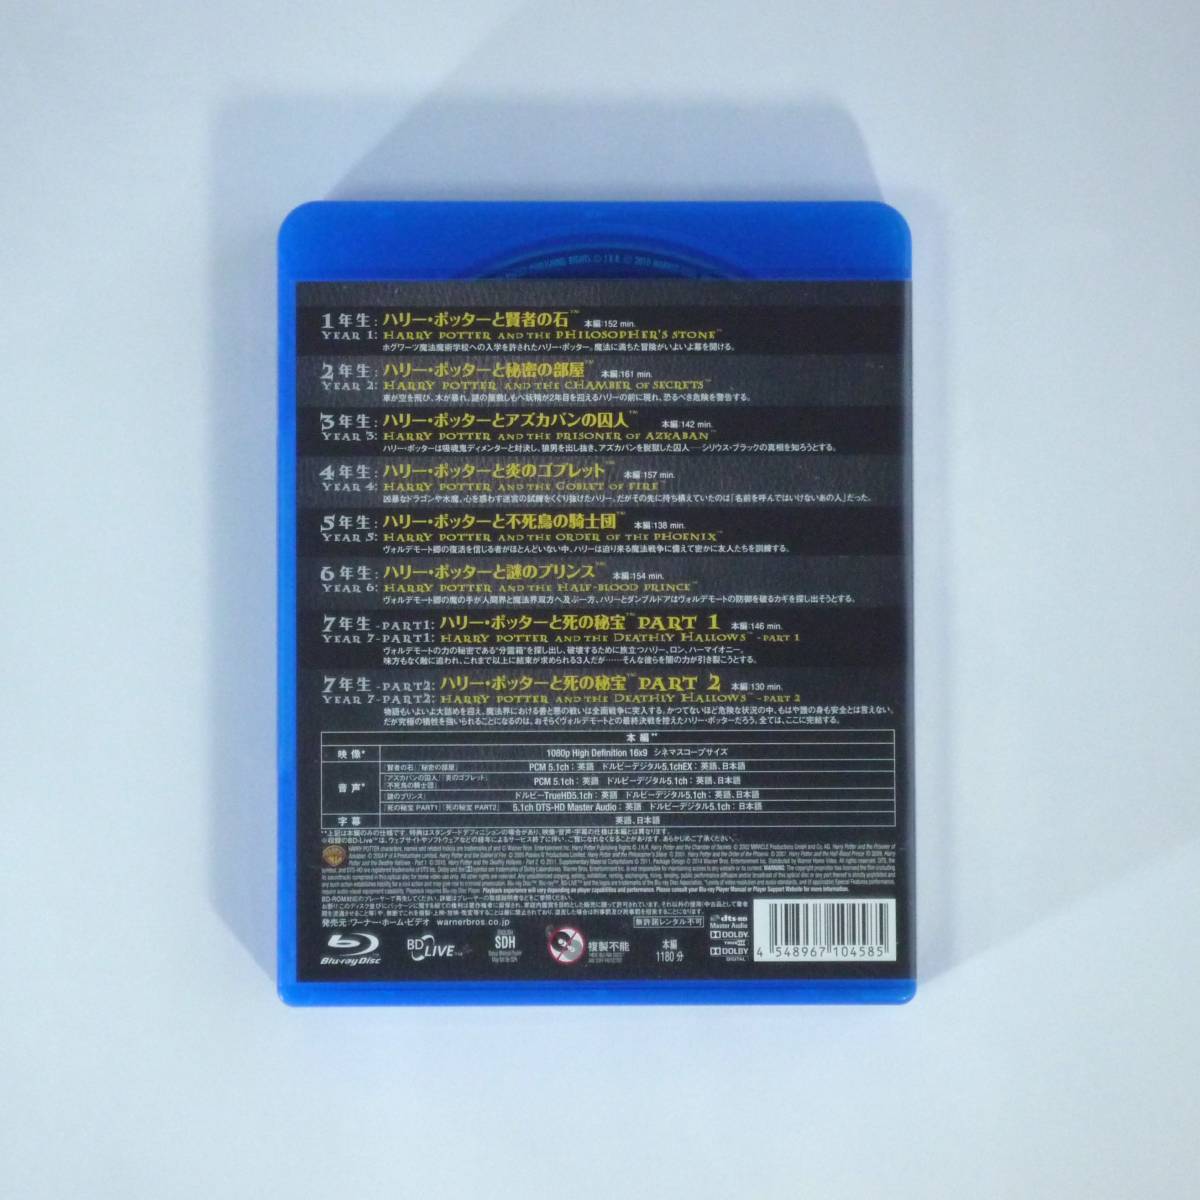 ハリーポッター 8-Film ブルーレイセット (8枚組) [Blu-ray] HarryPotter THE COMPLETE 8-FILM COLLECTION 【楽天ブックス限定ジャケット】_画像3